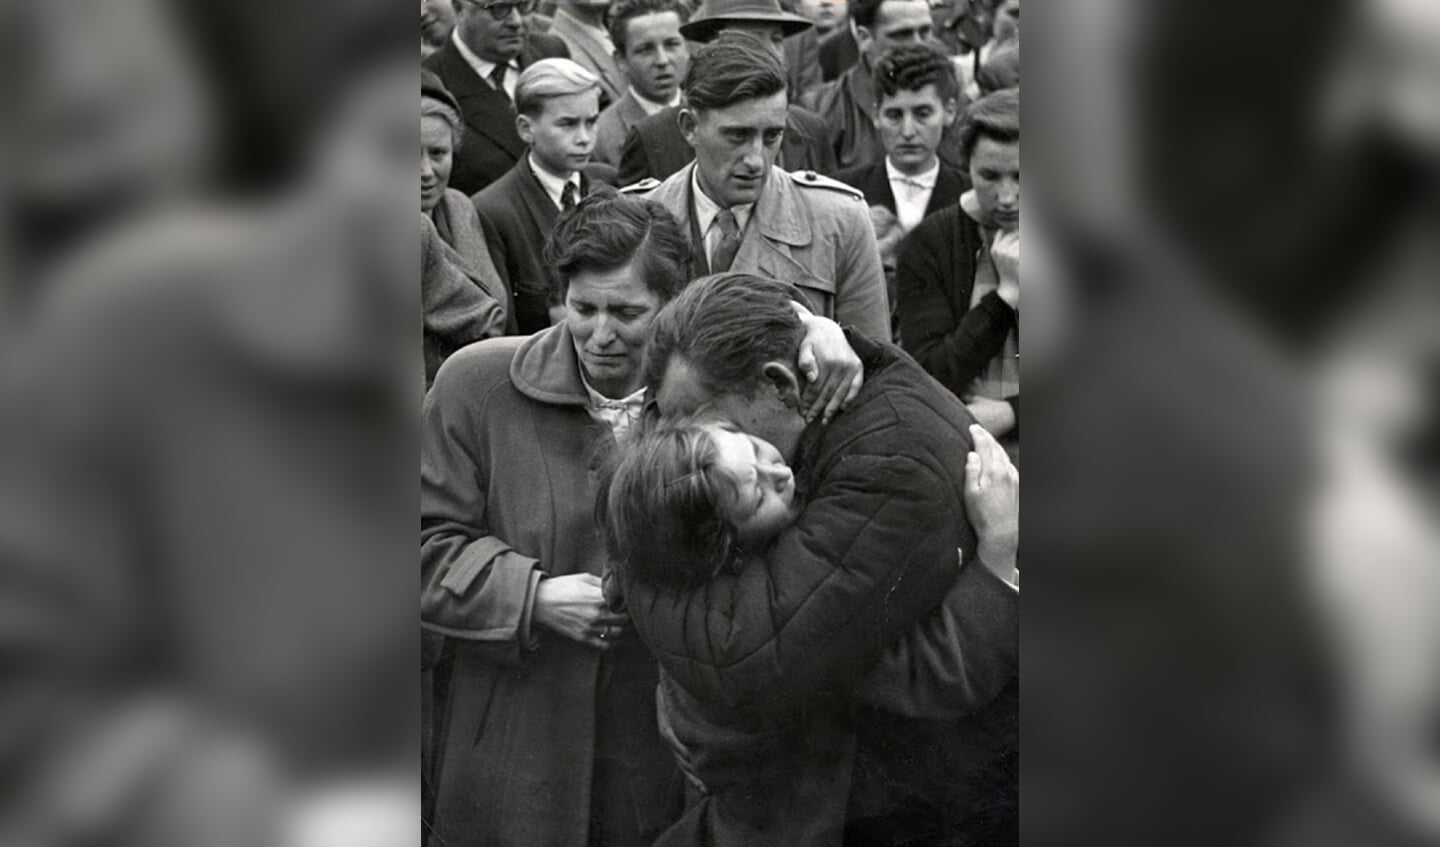 Een Duitse krijgsgevangene ontmoet in 1955 bij terugkeer uit Rusland zijn dochter van 12 jaar in het grenskamp Friedland. Hij zag haar voor het laatst toen zij 1 jaar was.